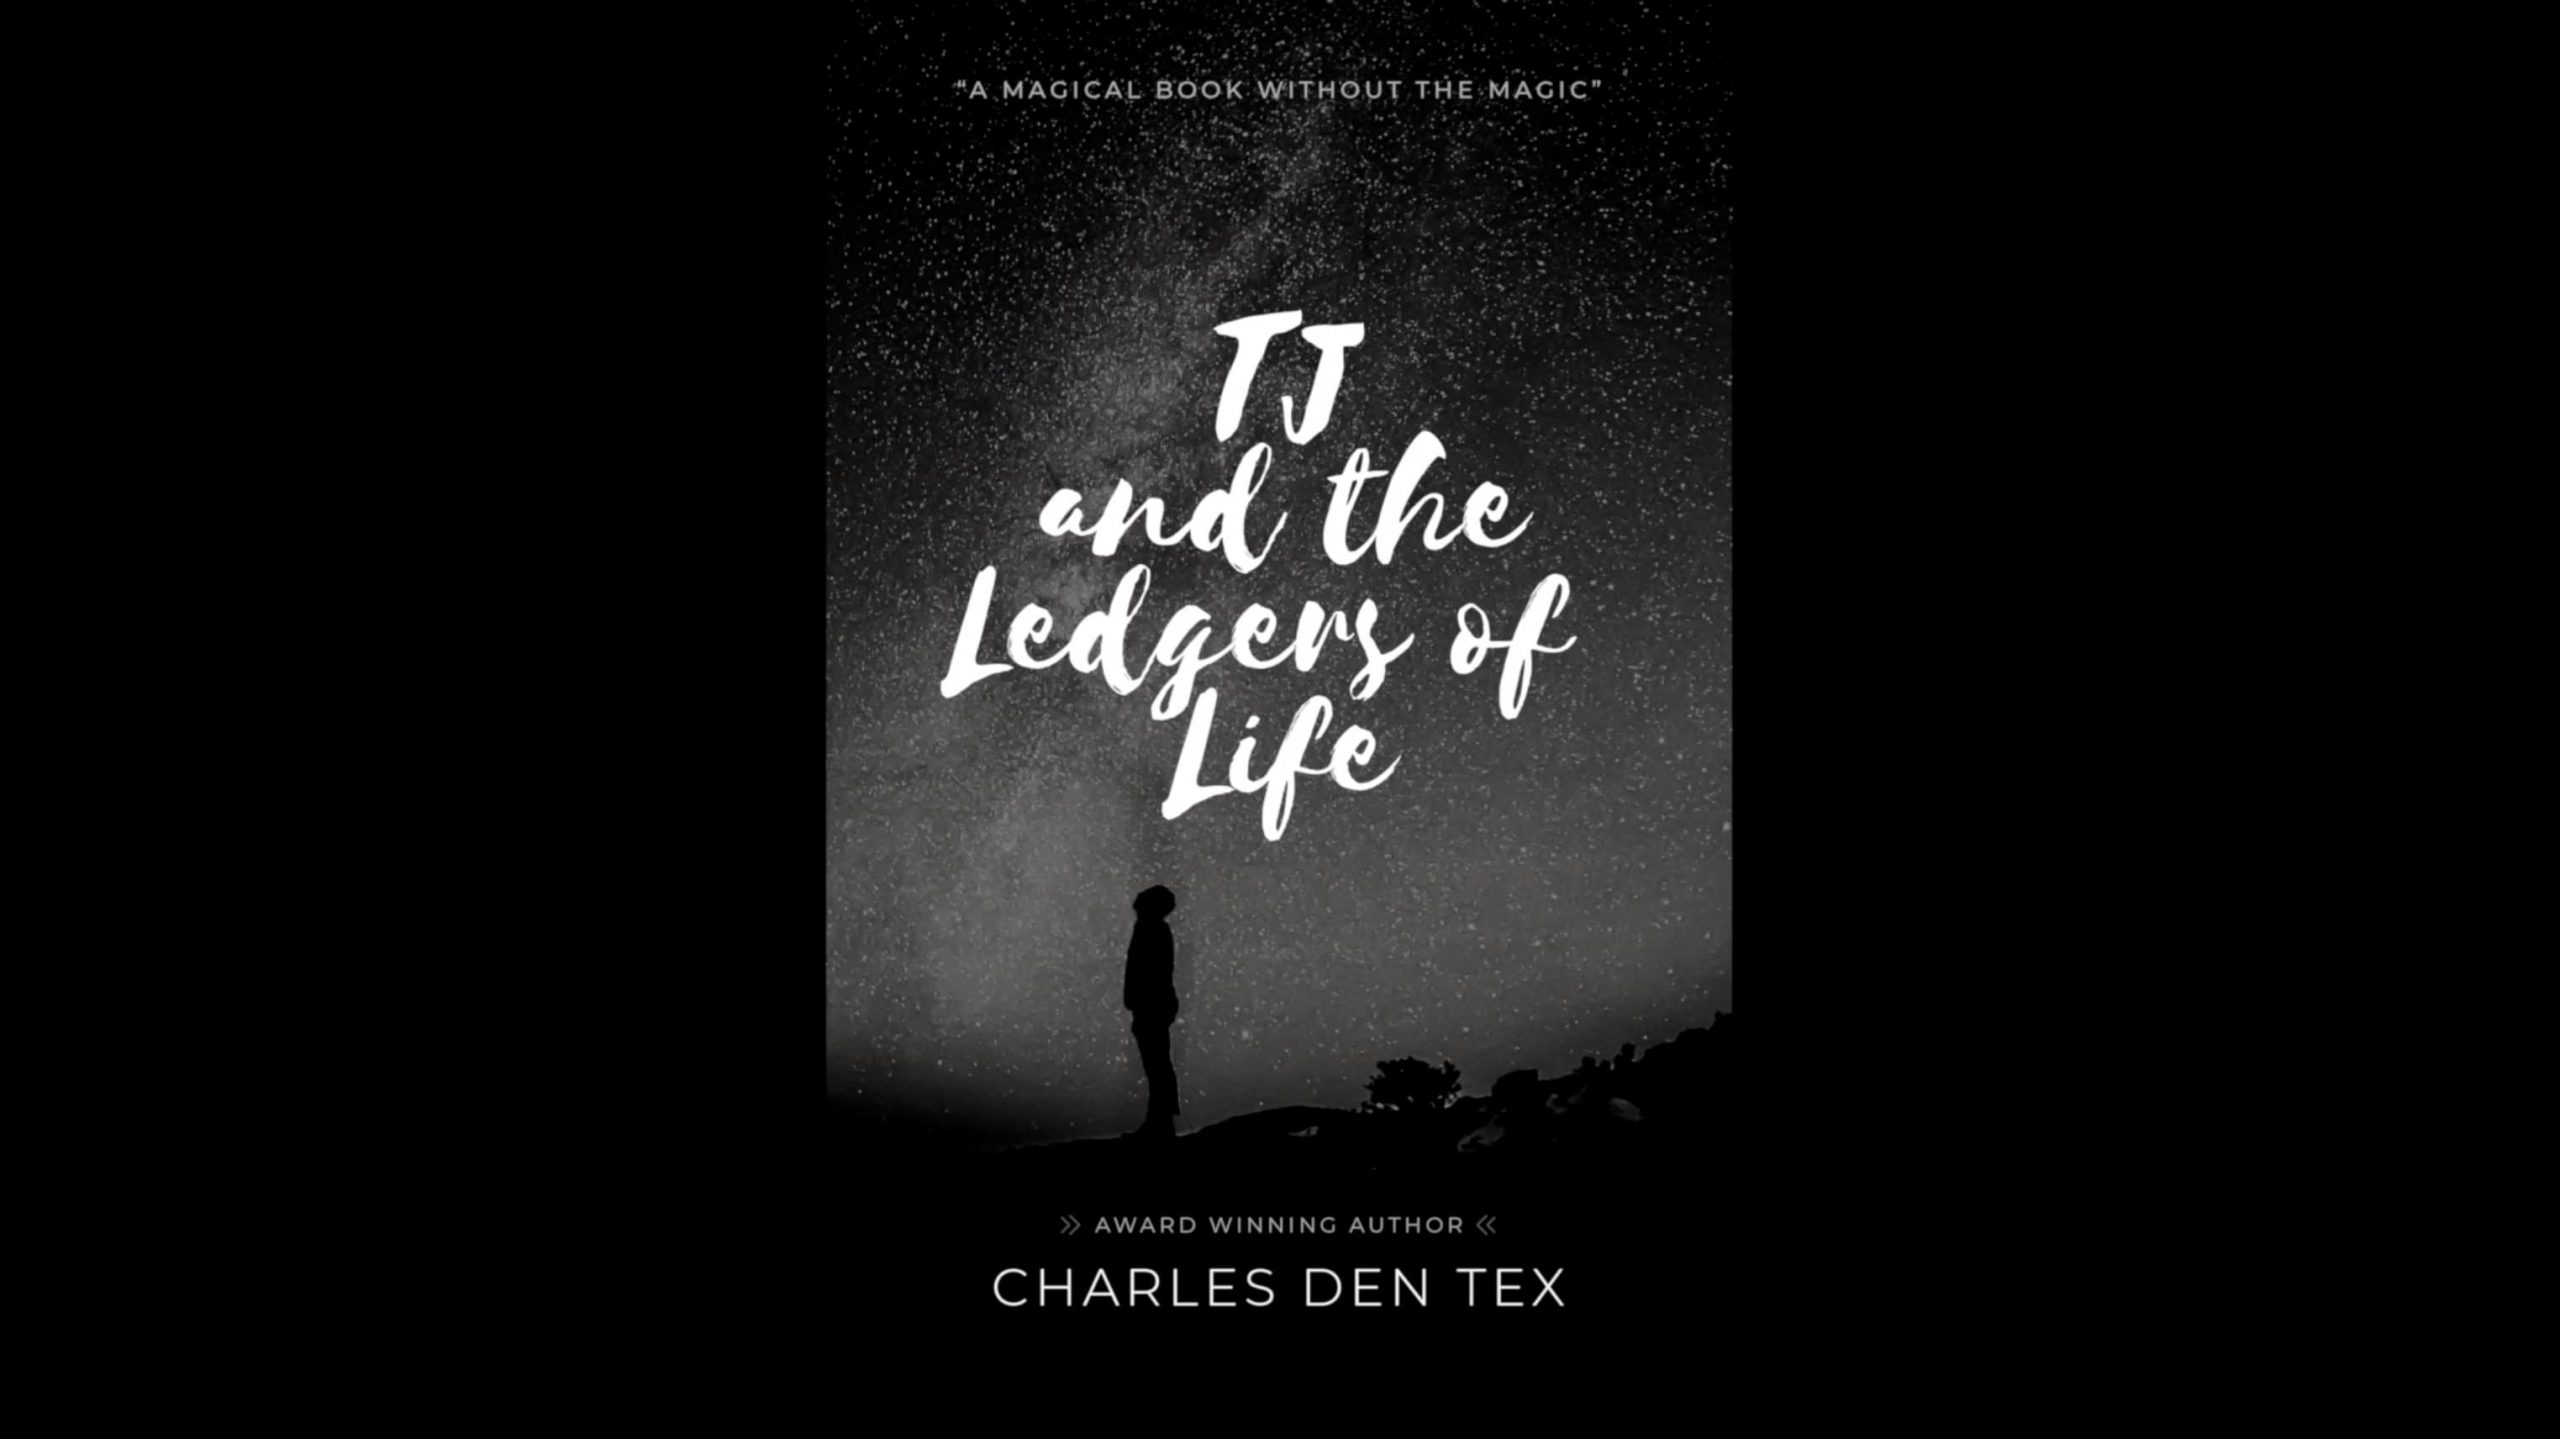 Charles den Tex